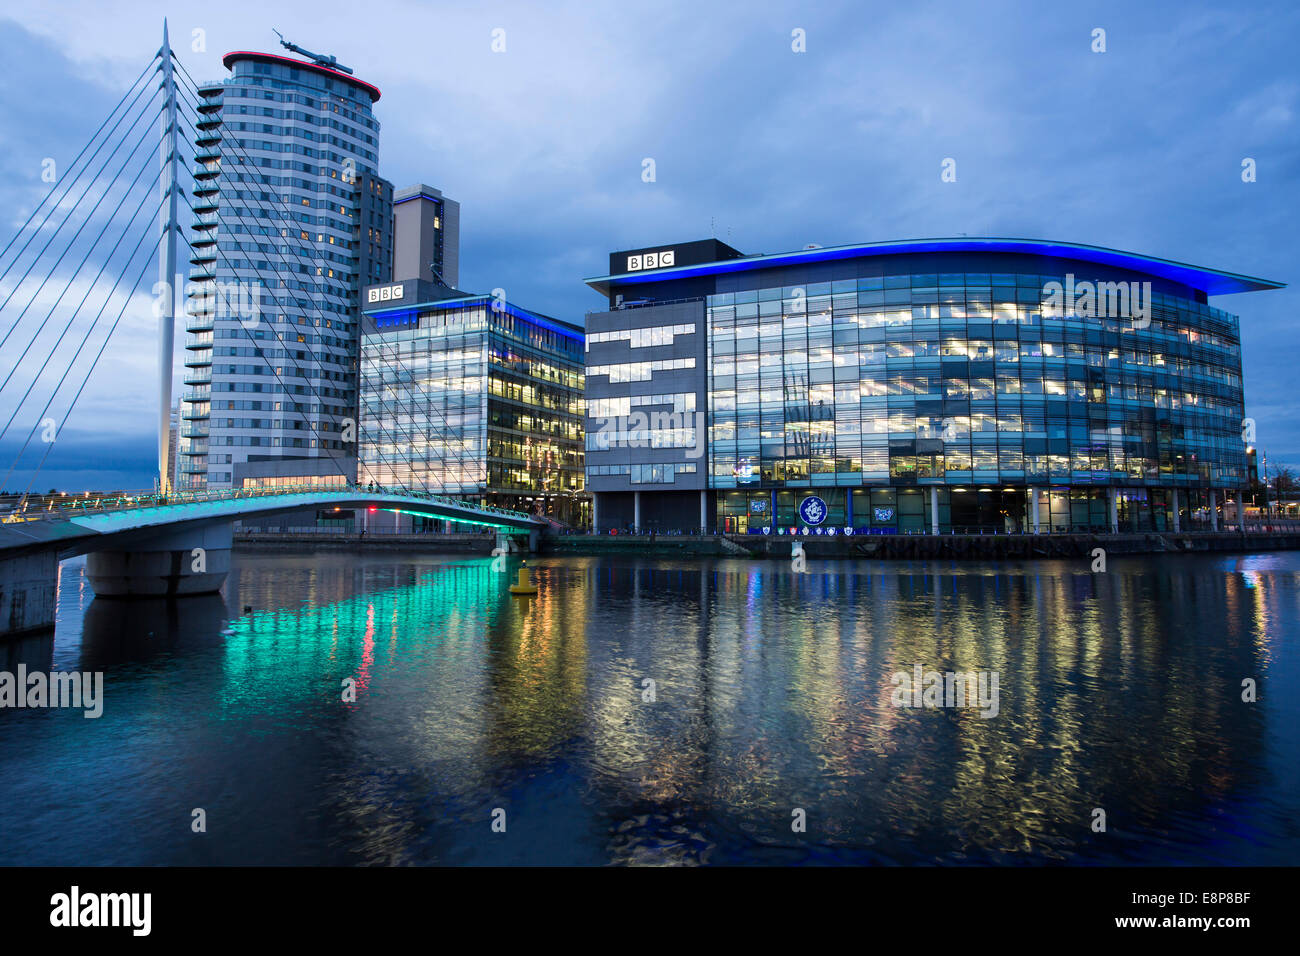 Vista generale del Media City UK, casa della BBC, sulle rive del Manchester Ship Canal a Salford, Manchester. Foto Stock